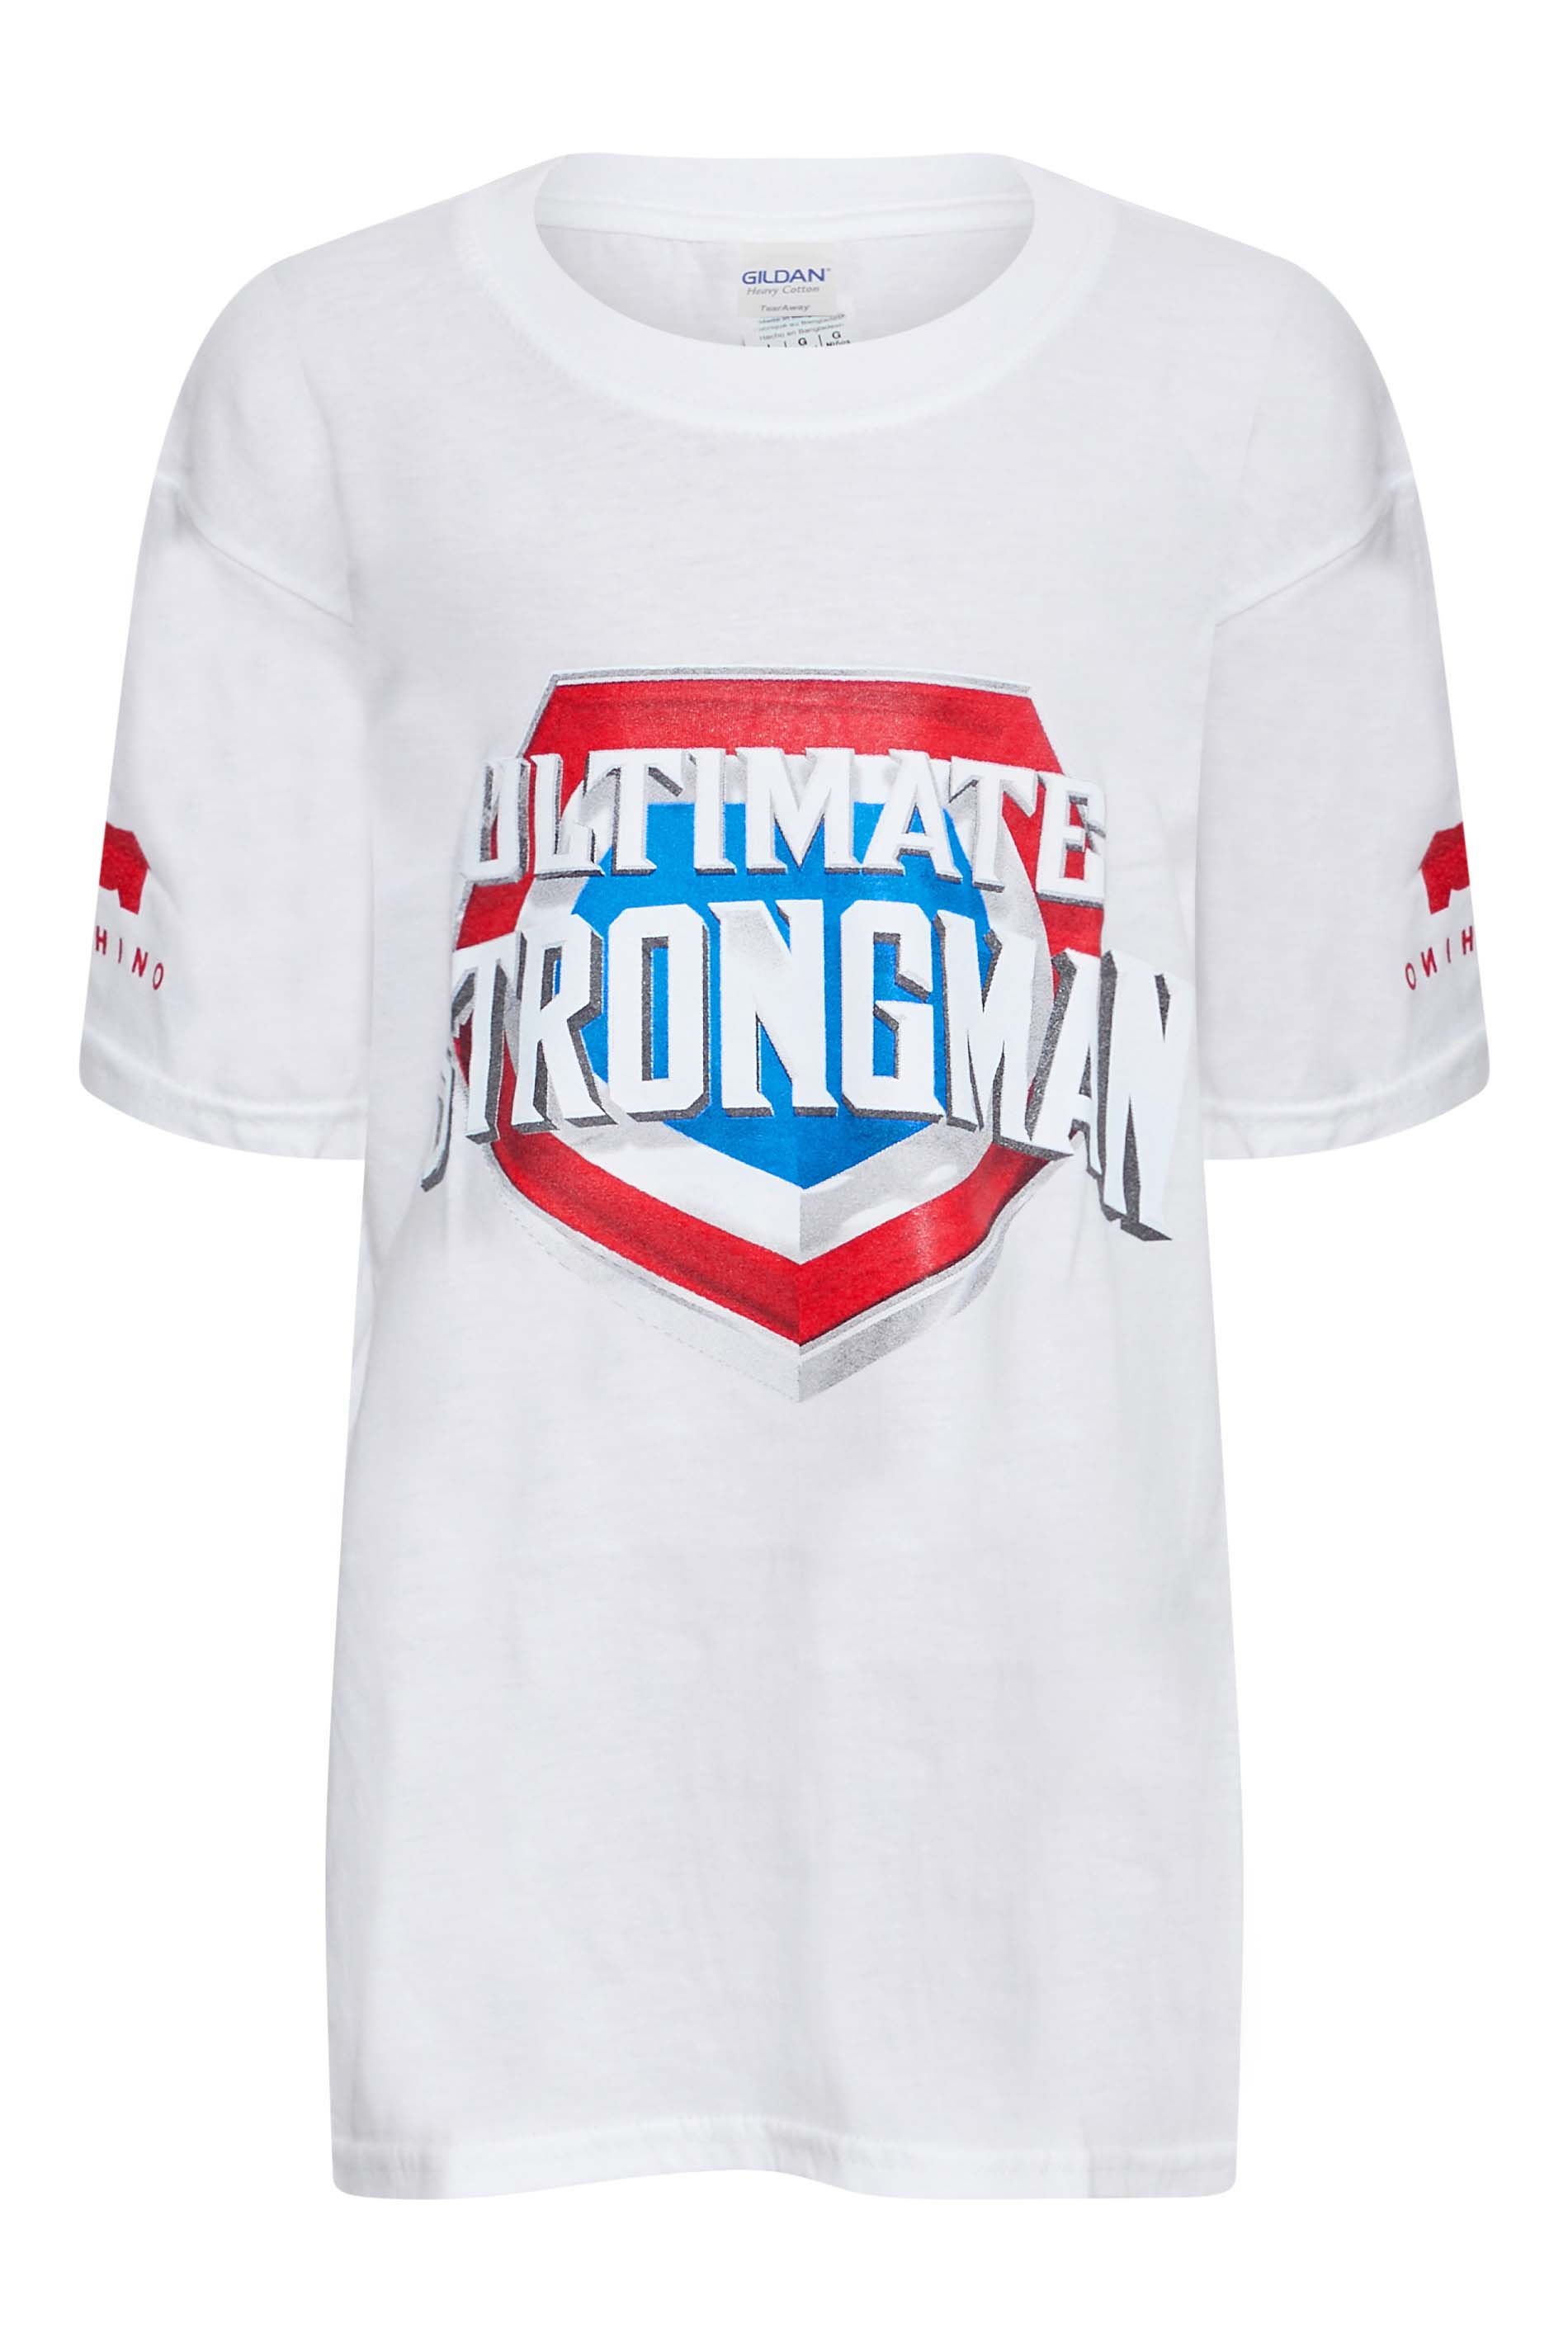 BadRhino Girls White Ultimate Strongman T-Shirt 1